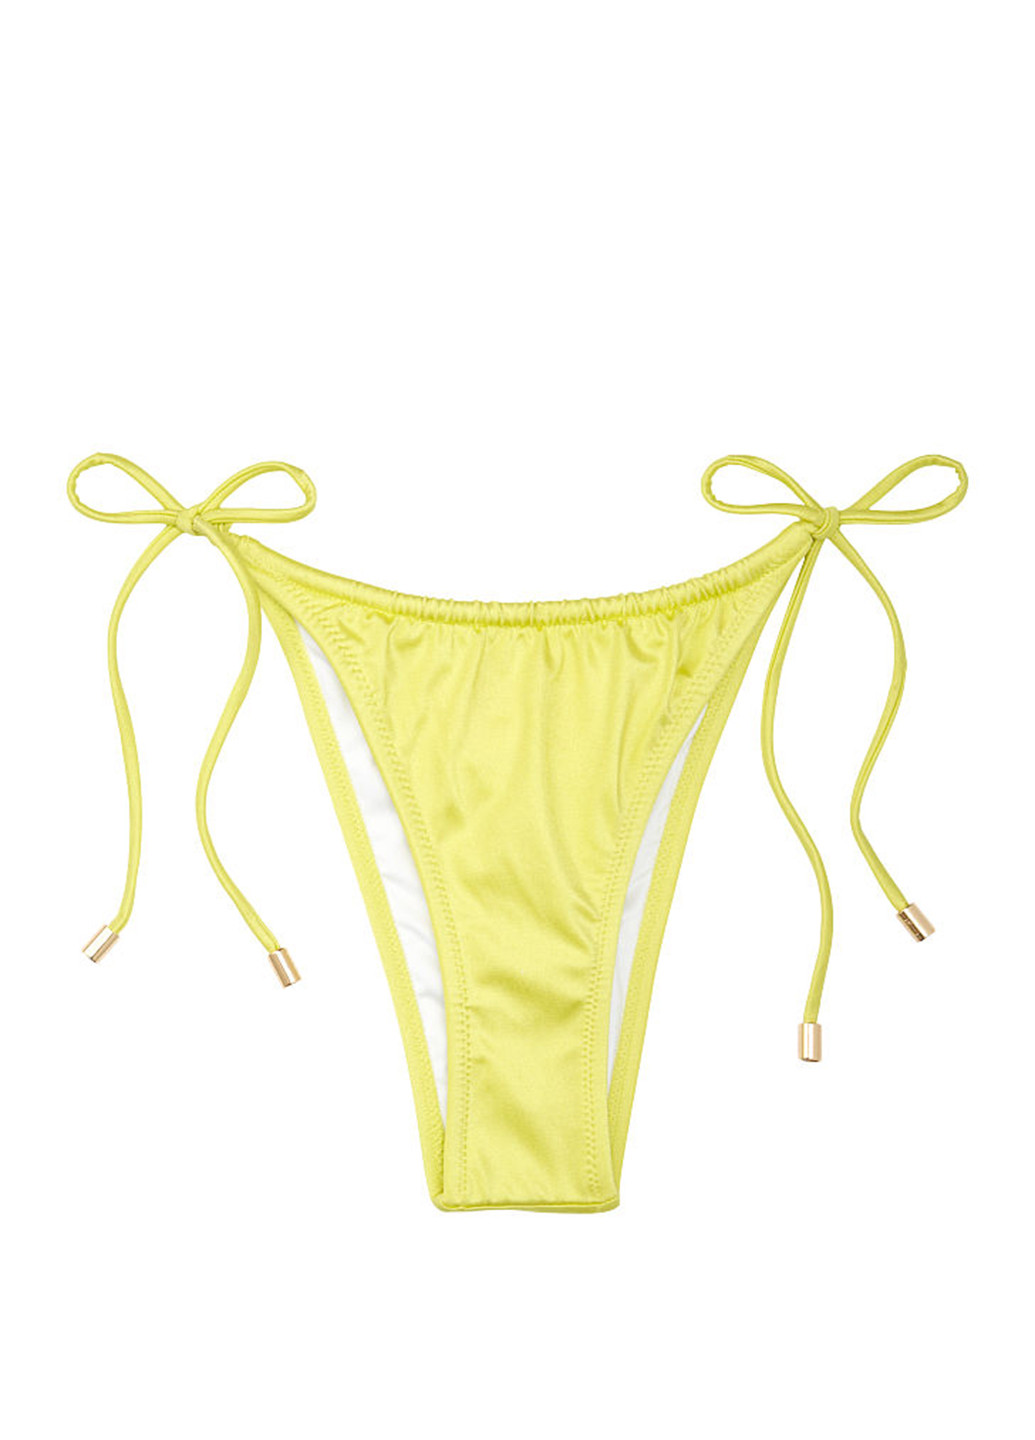 Желтый летний купальник (лиф, трусы) бикини, раздельный Victoria's Secret